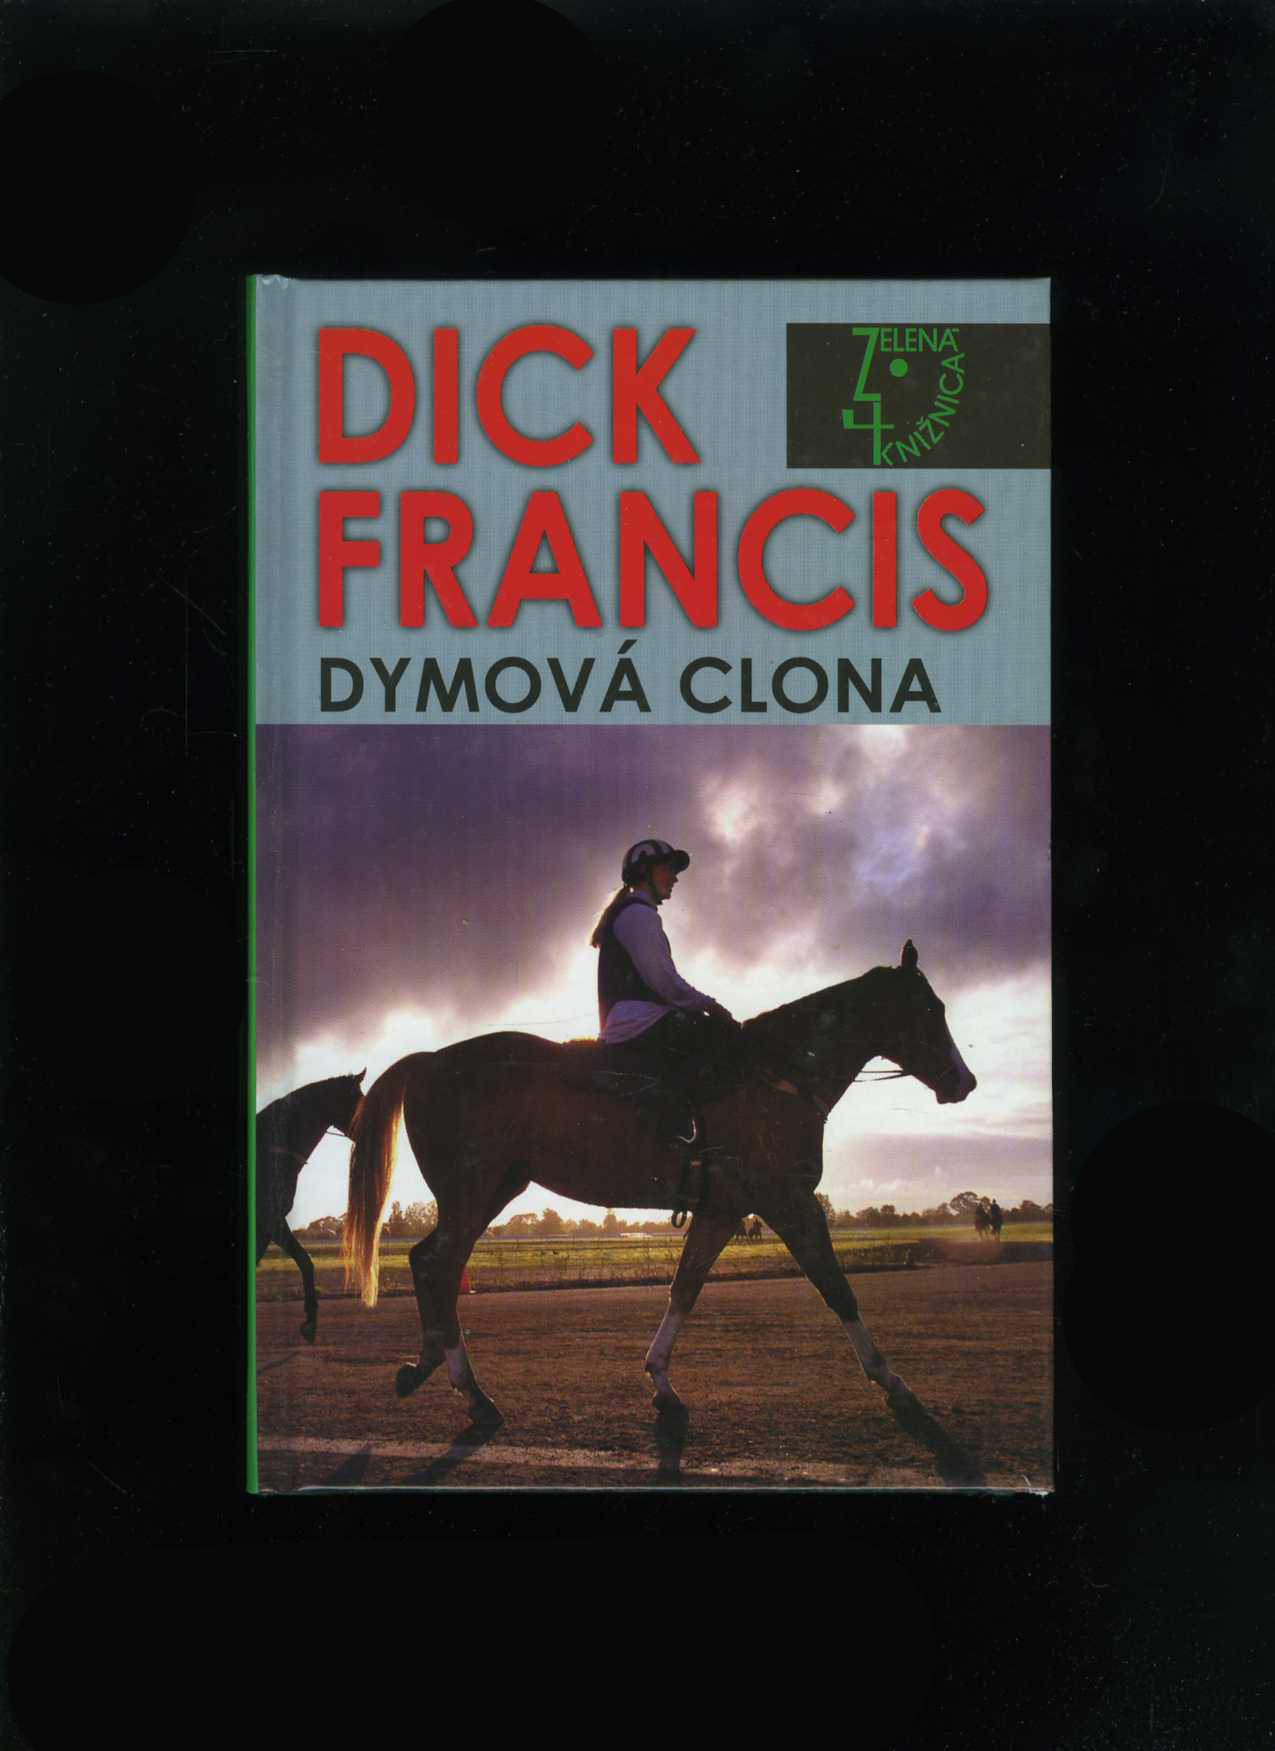 Dymová clona (Dick Francis)